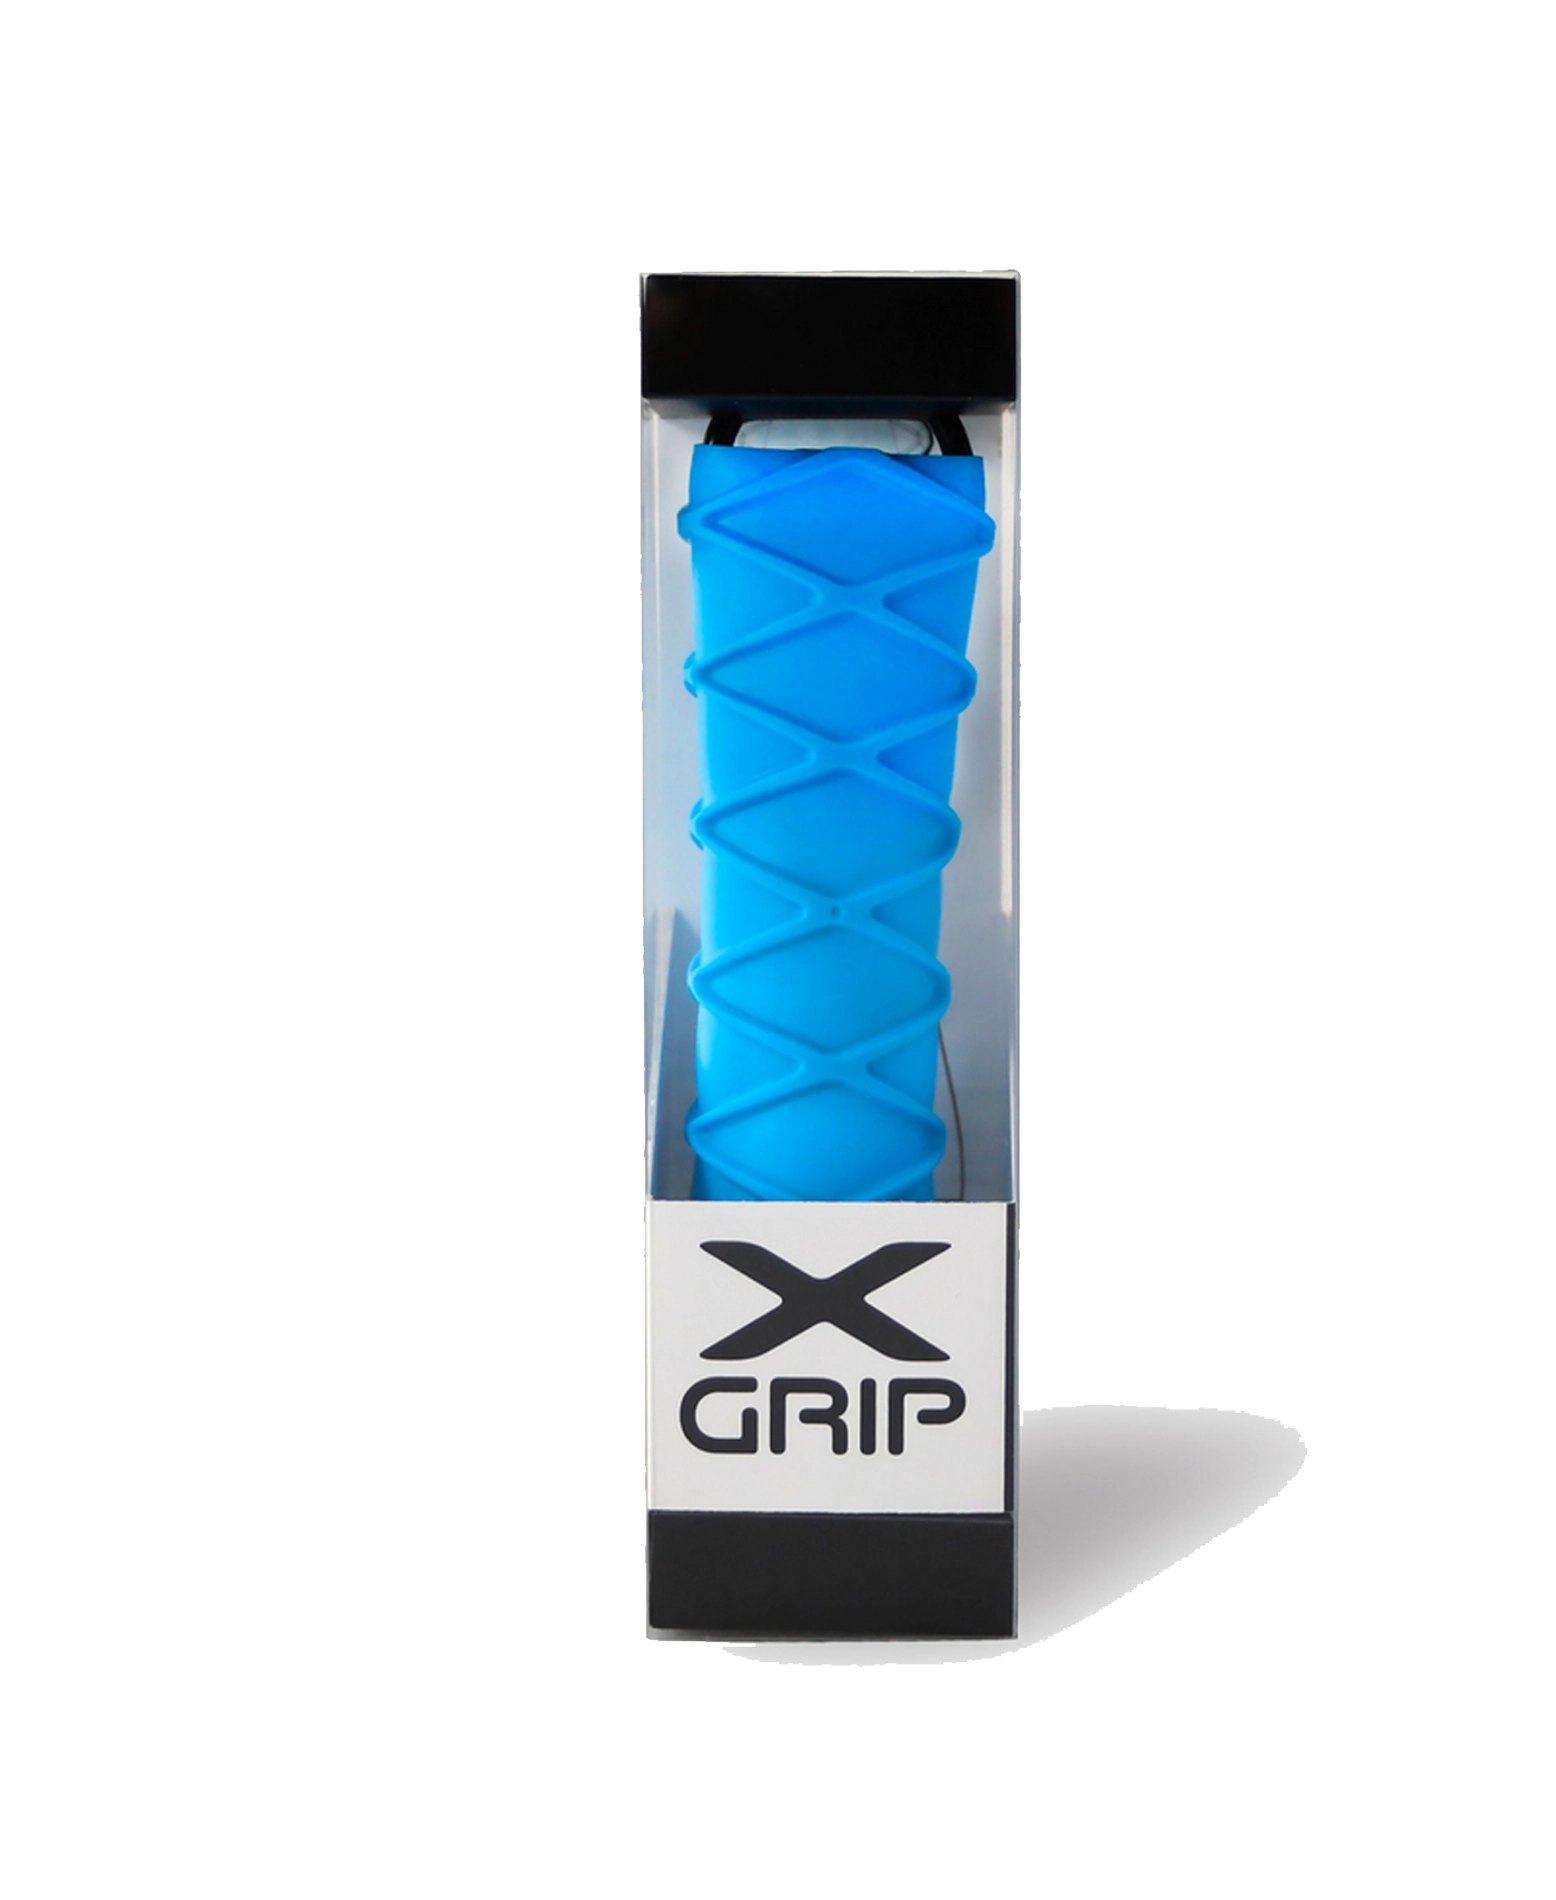 X-GRIP – thepadelshop